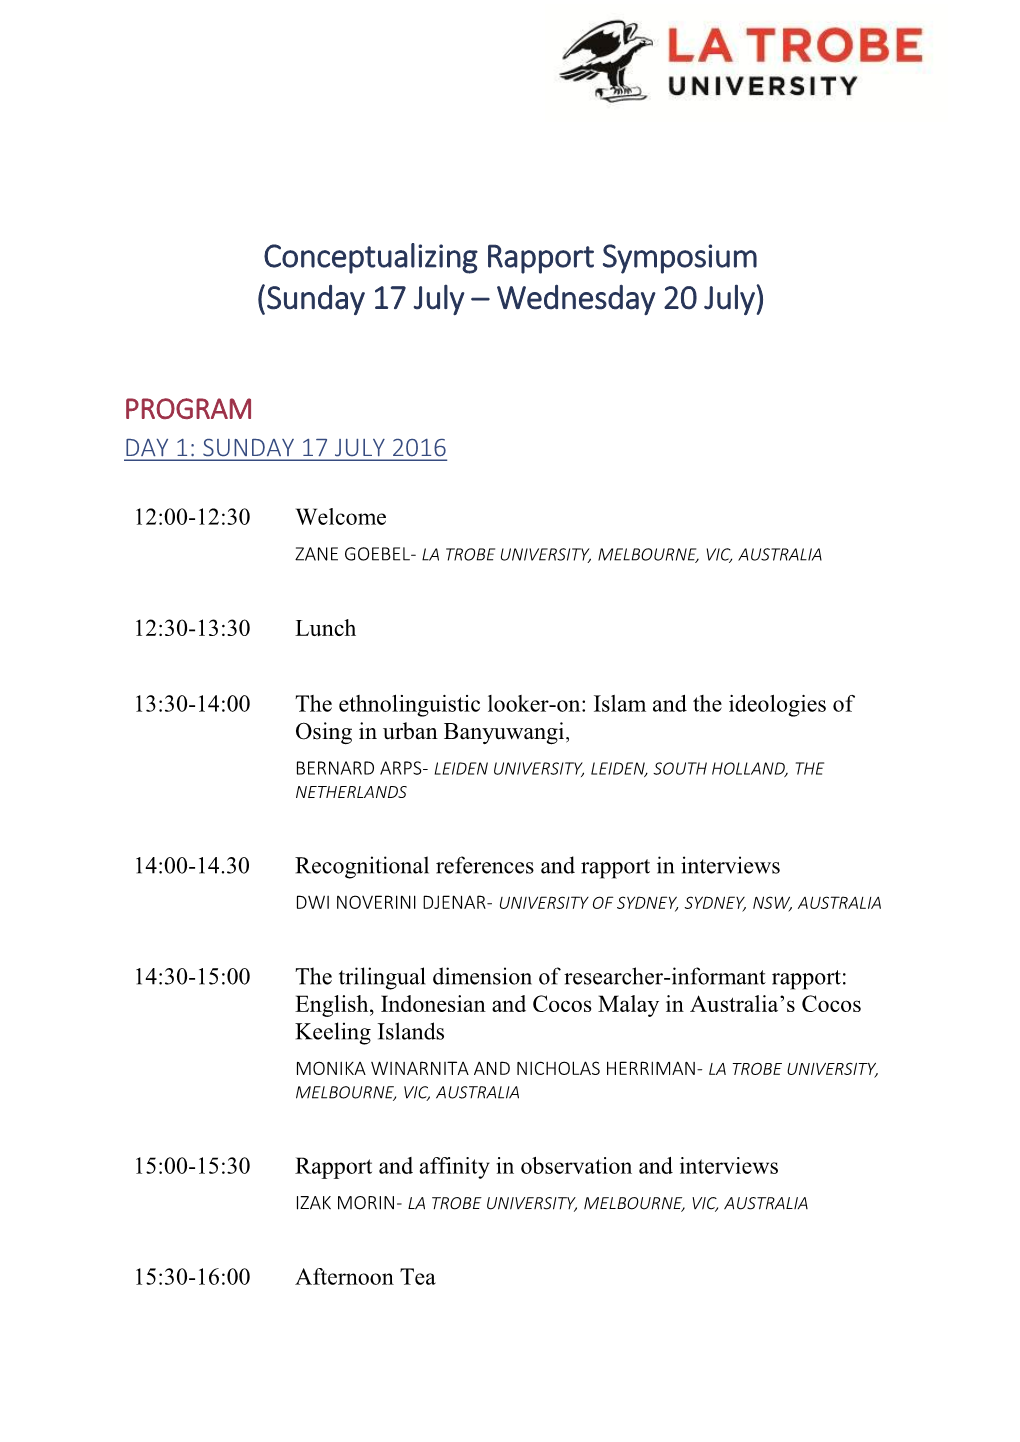 Conceptualizing Rapport Symposium (Sunday 17 July – Wednesday 20 July)